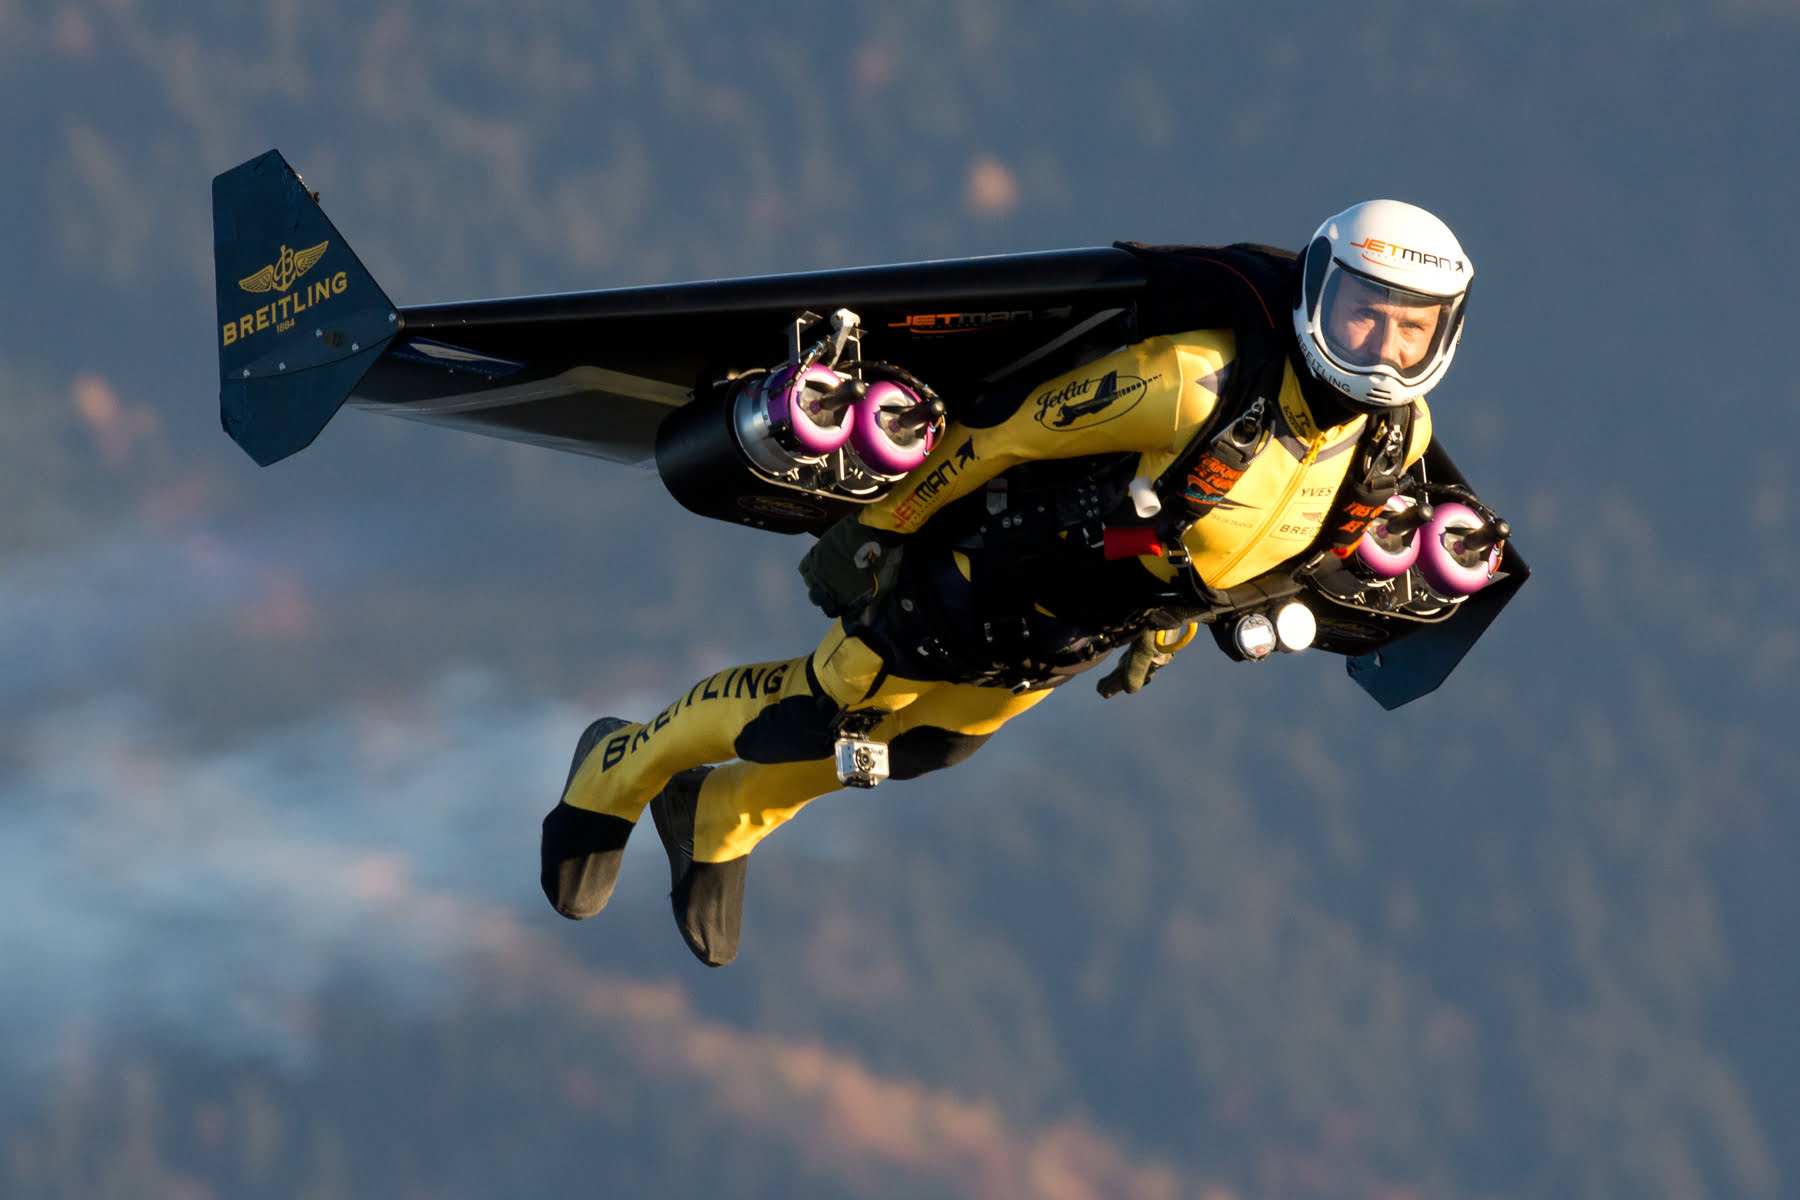 Jetman: Humanos en Jetpacks volando como pájaros